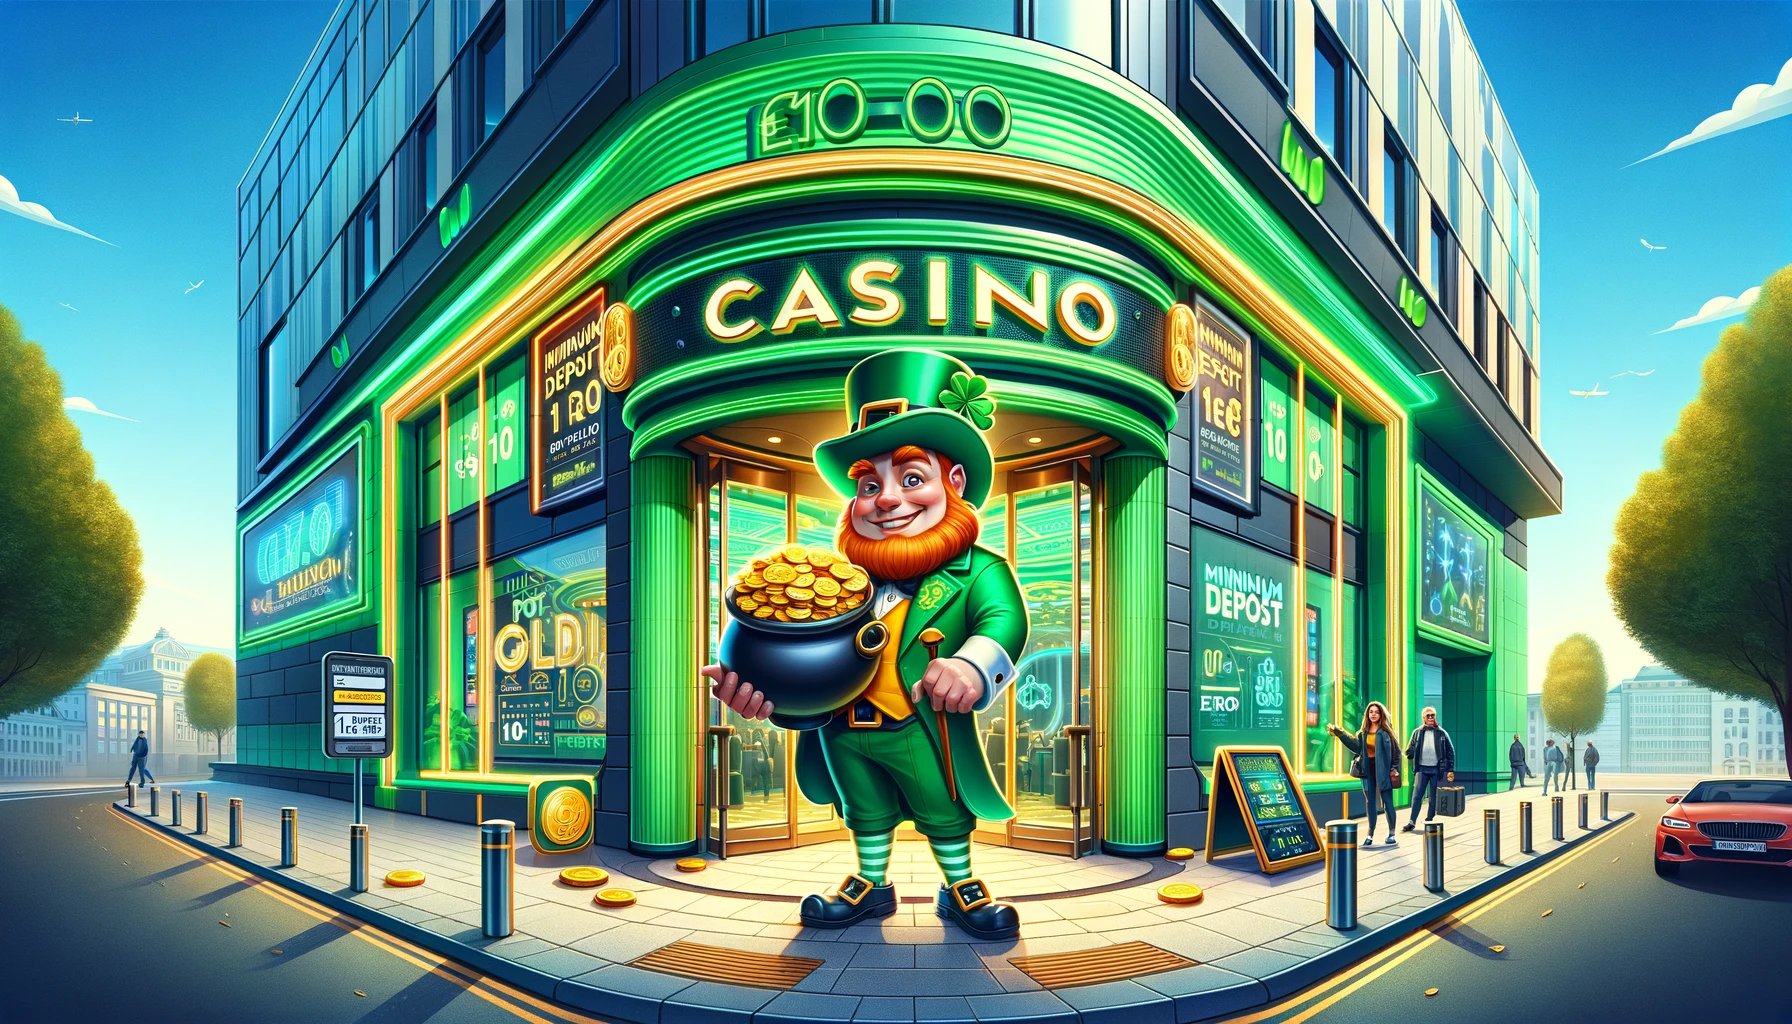 Irish Casino With Minimum Deposit 10 Euro